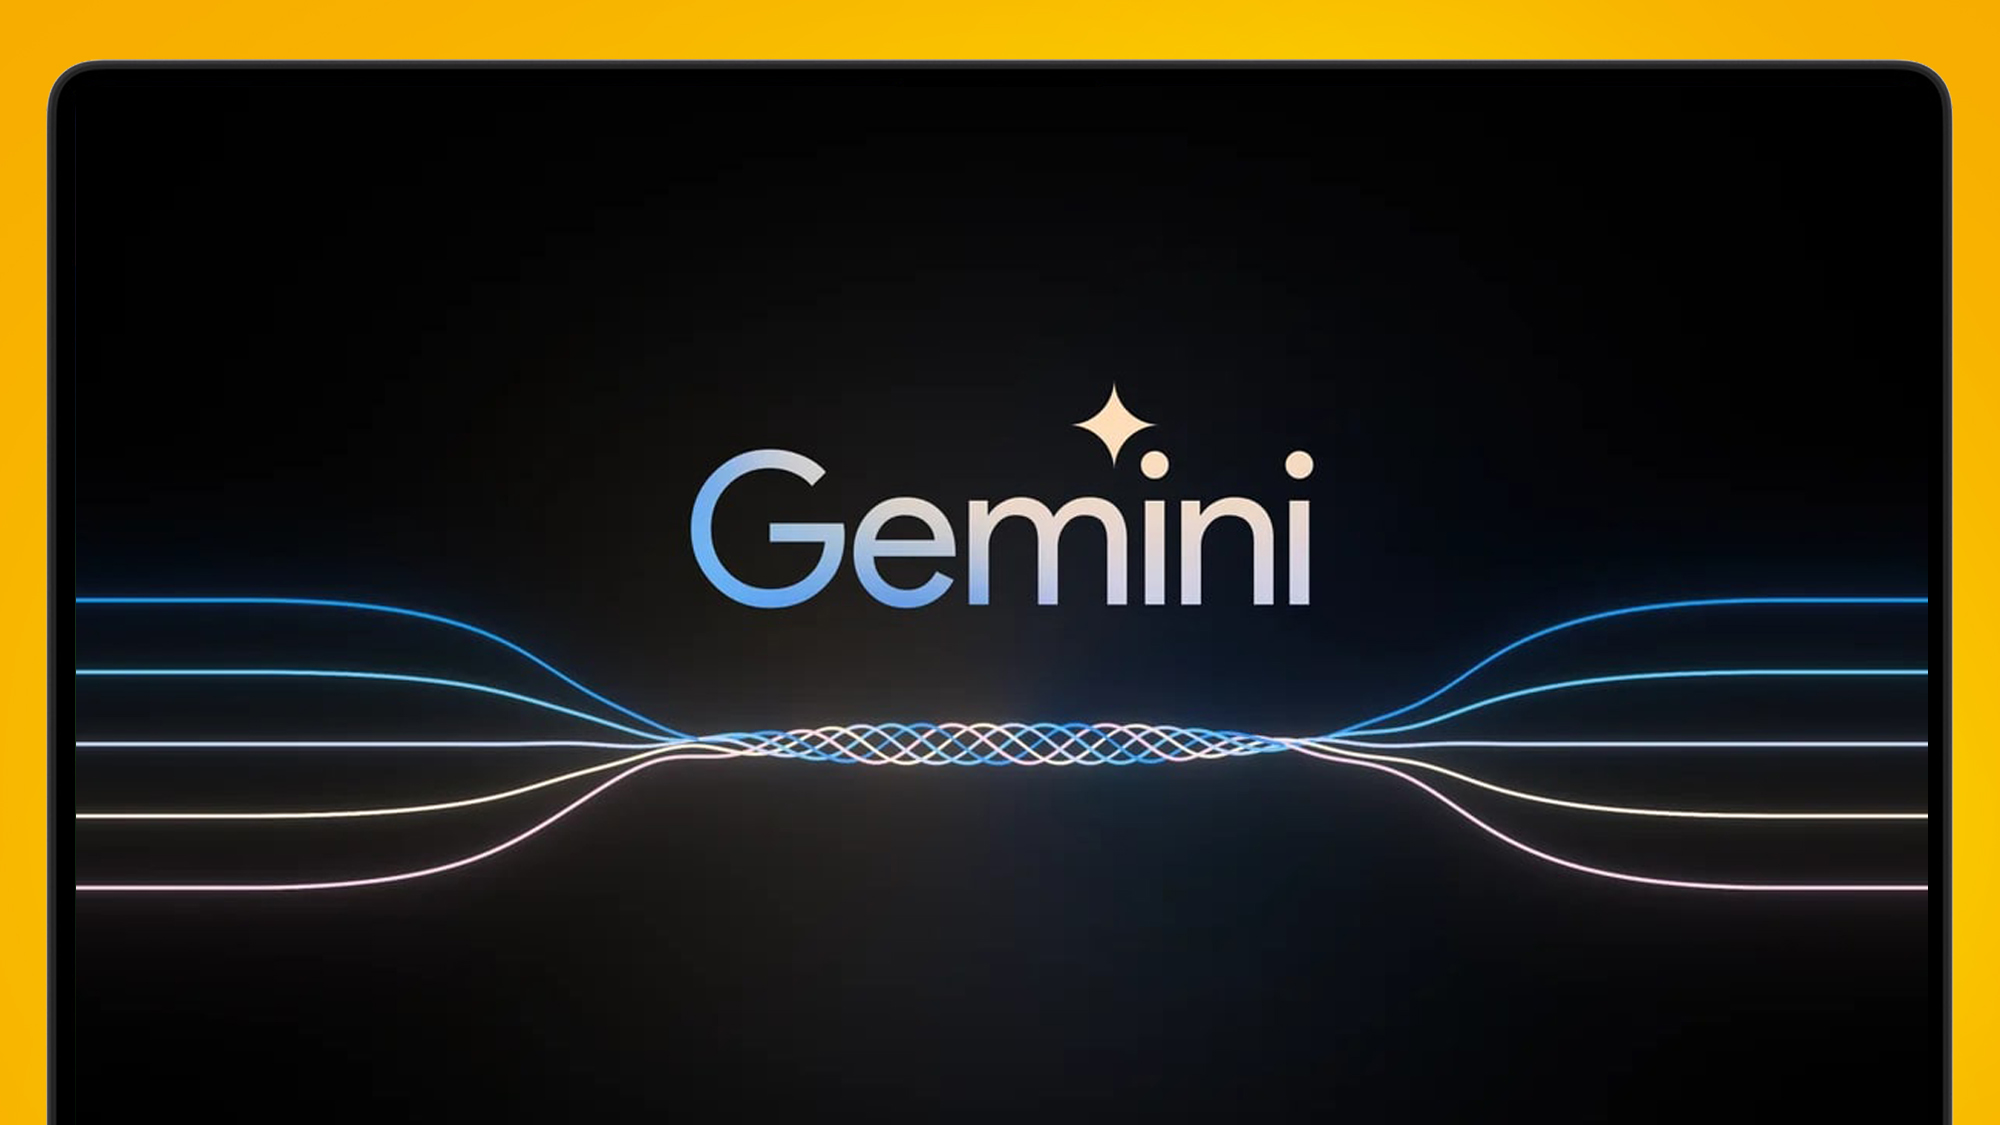 لوگوی Google Gemini روی صفحه نمایش لپ تاپ که در پس زمینه نارنجی قرار دارد